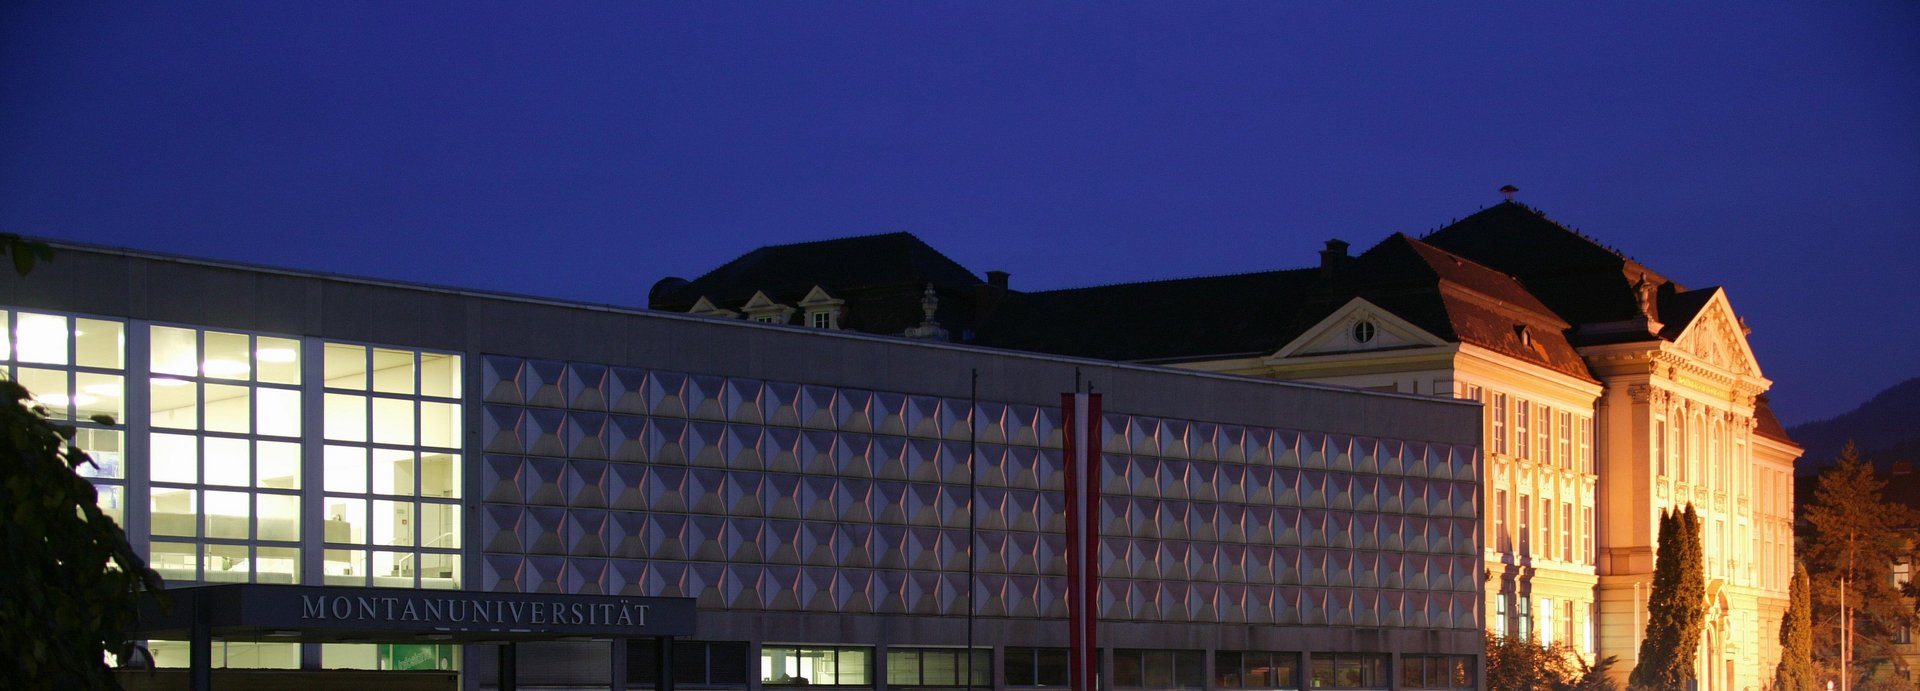 Der Erzherzog-Johann-Trakt und das Hauptgebäude der Montanuniversität Leoben bei Nacht.